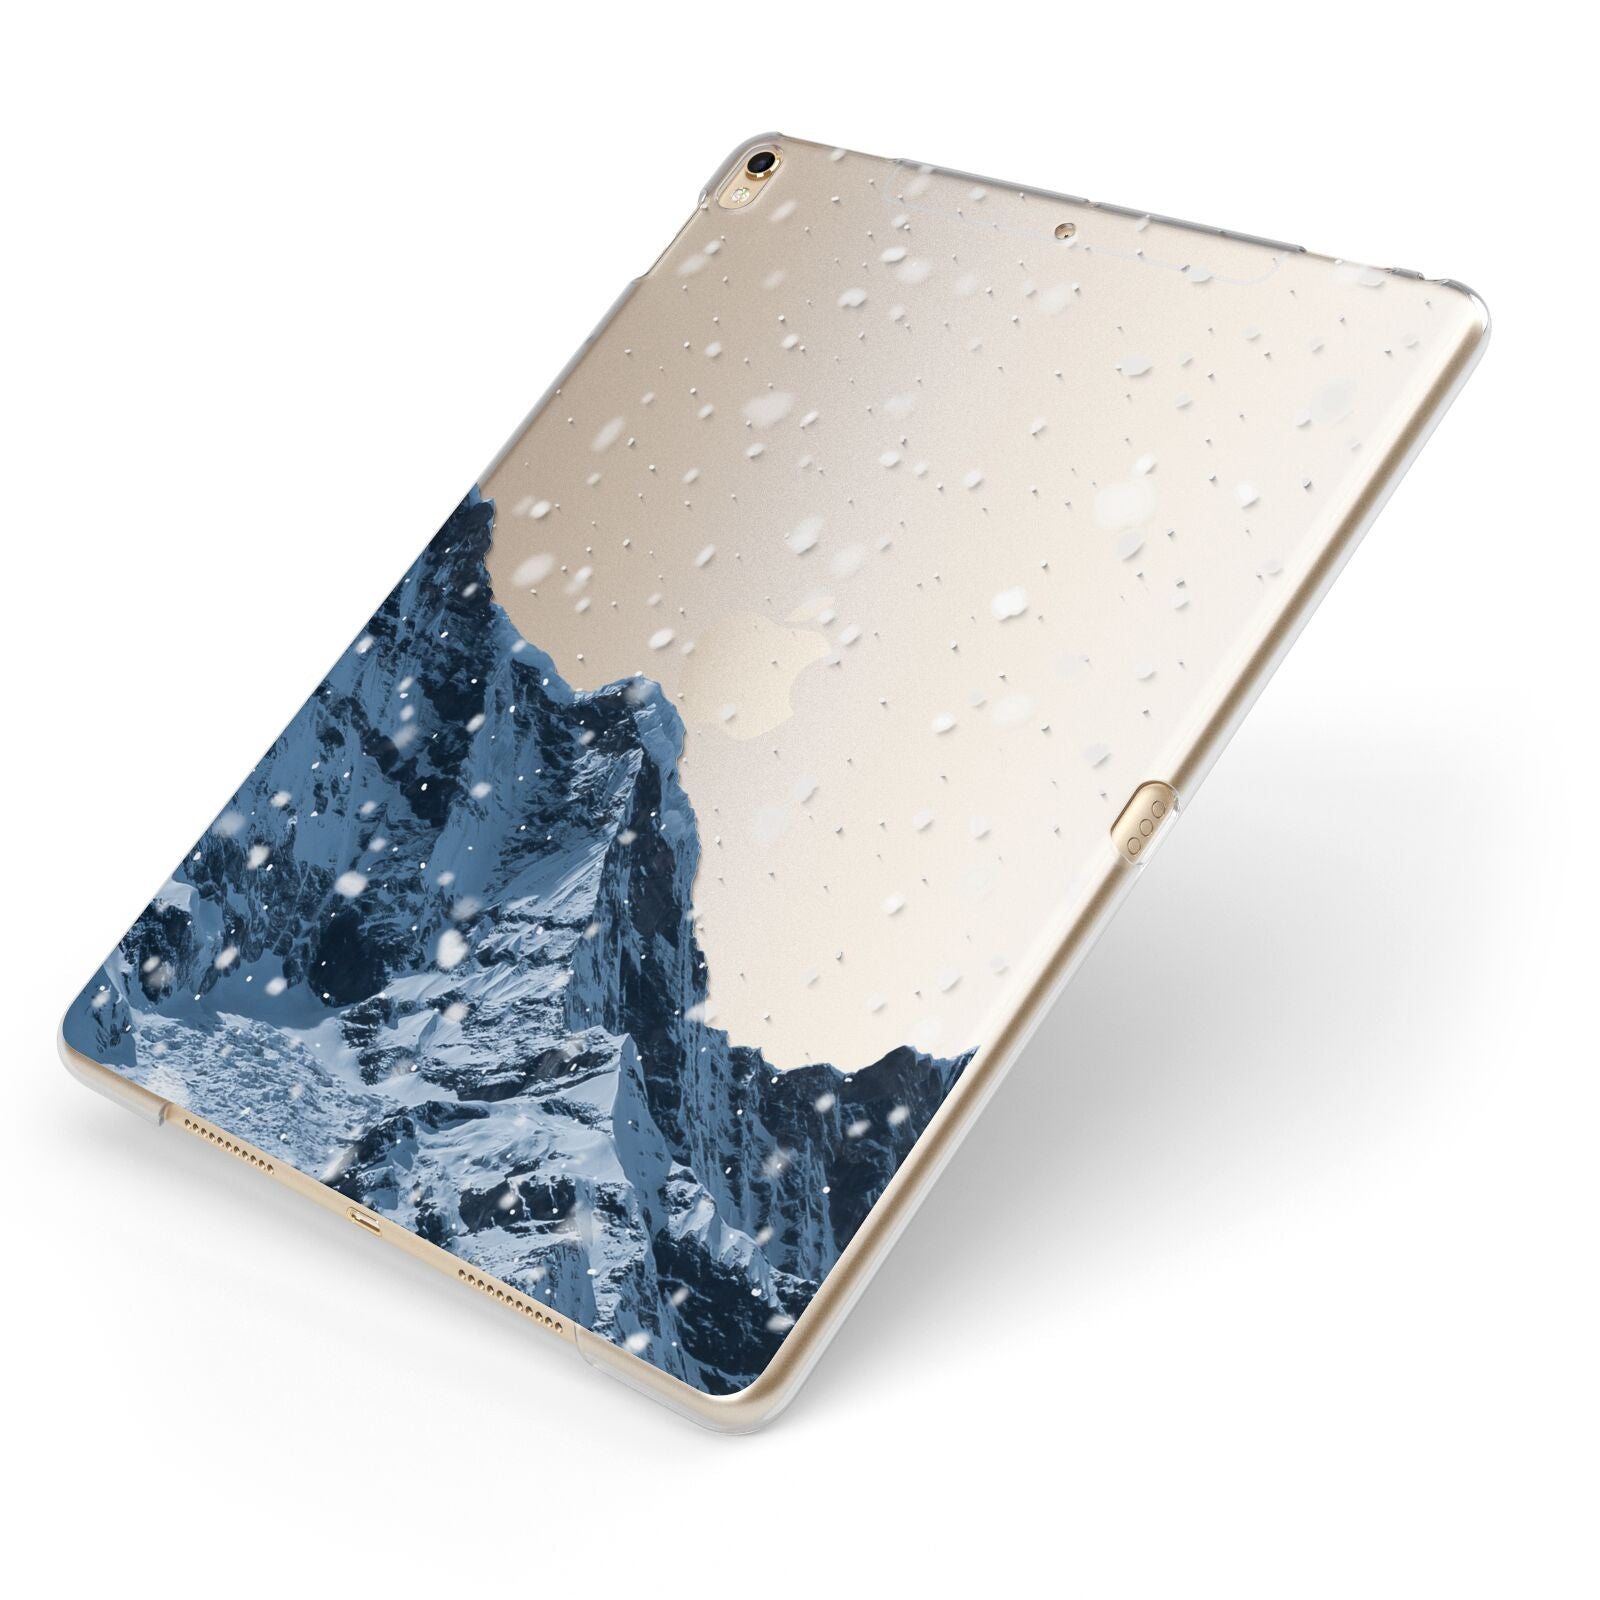 Mountain Snow Scene Apple iPad Case on Gold iPad Side View